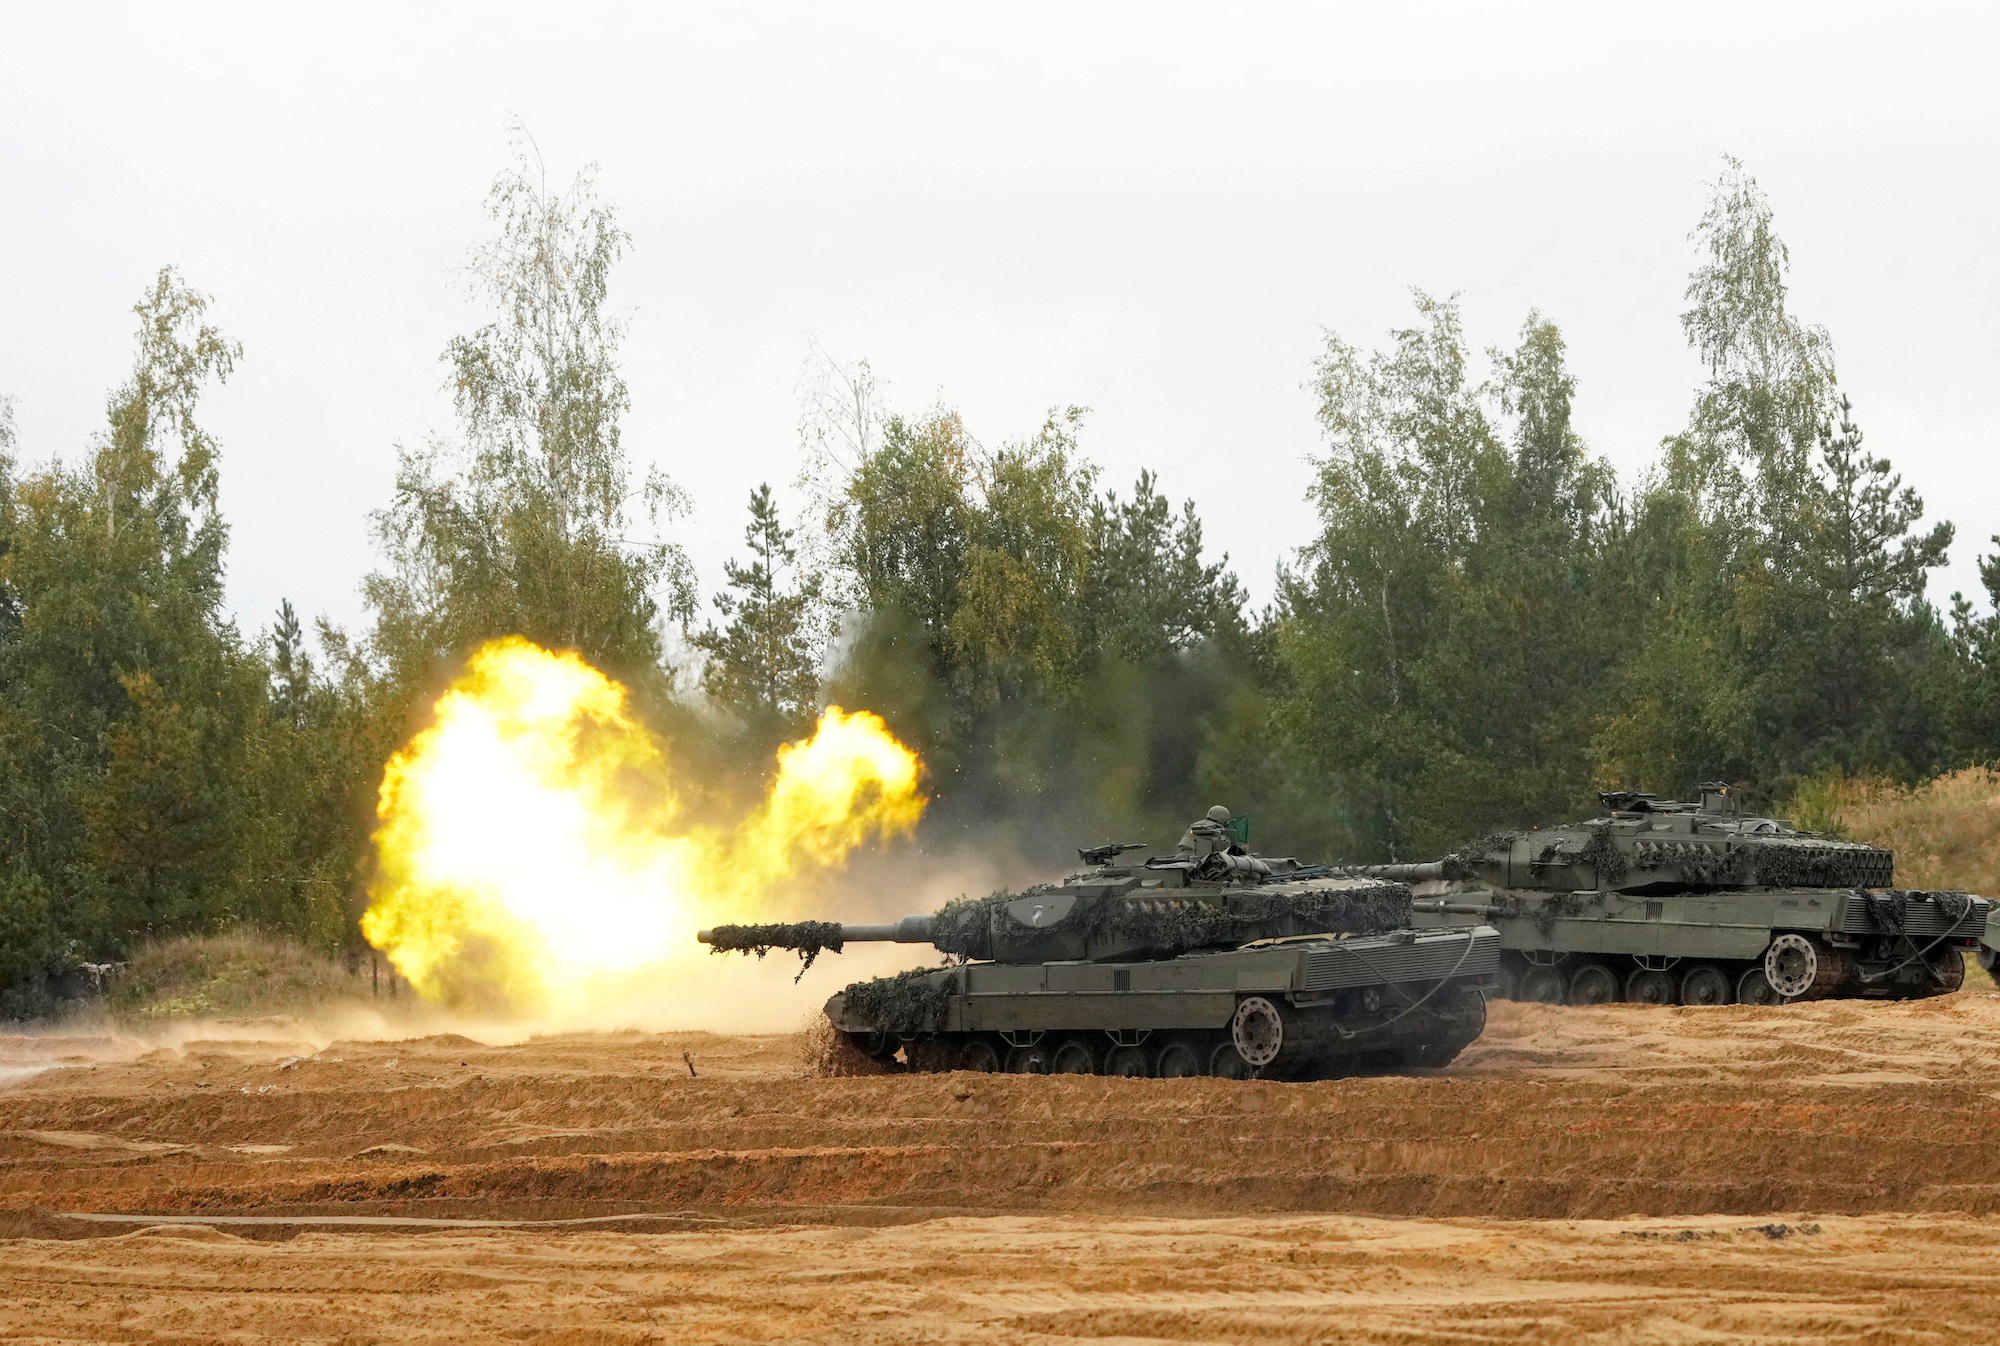 29 सितंबर, 2022 को लातविया में एक सैन्य अभ्यास के अंतिम चरण के दौरान एक स्पेनिश सेना के तेंदुए 2 टैंक में आग लग गई